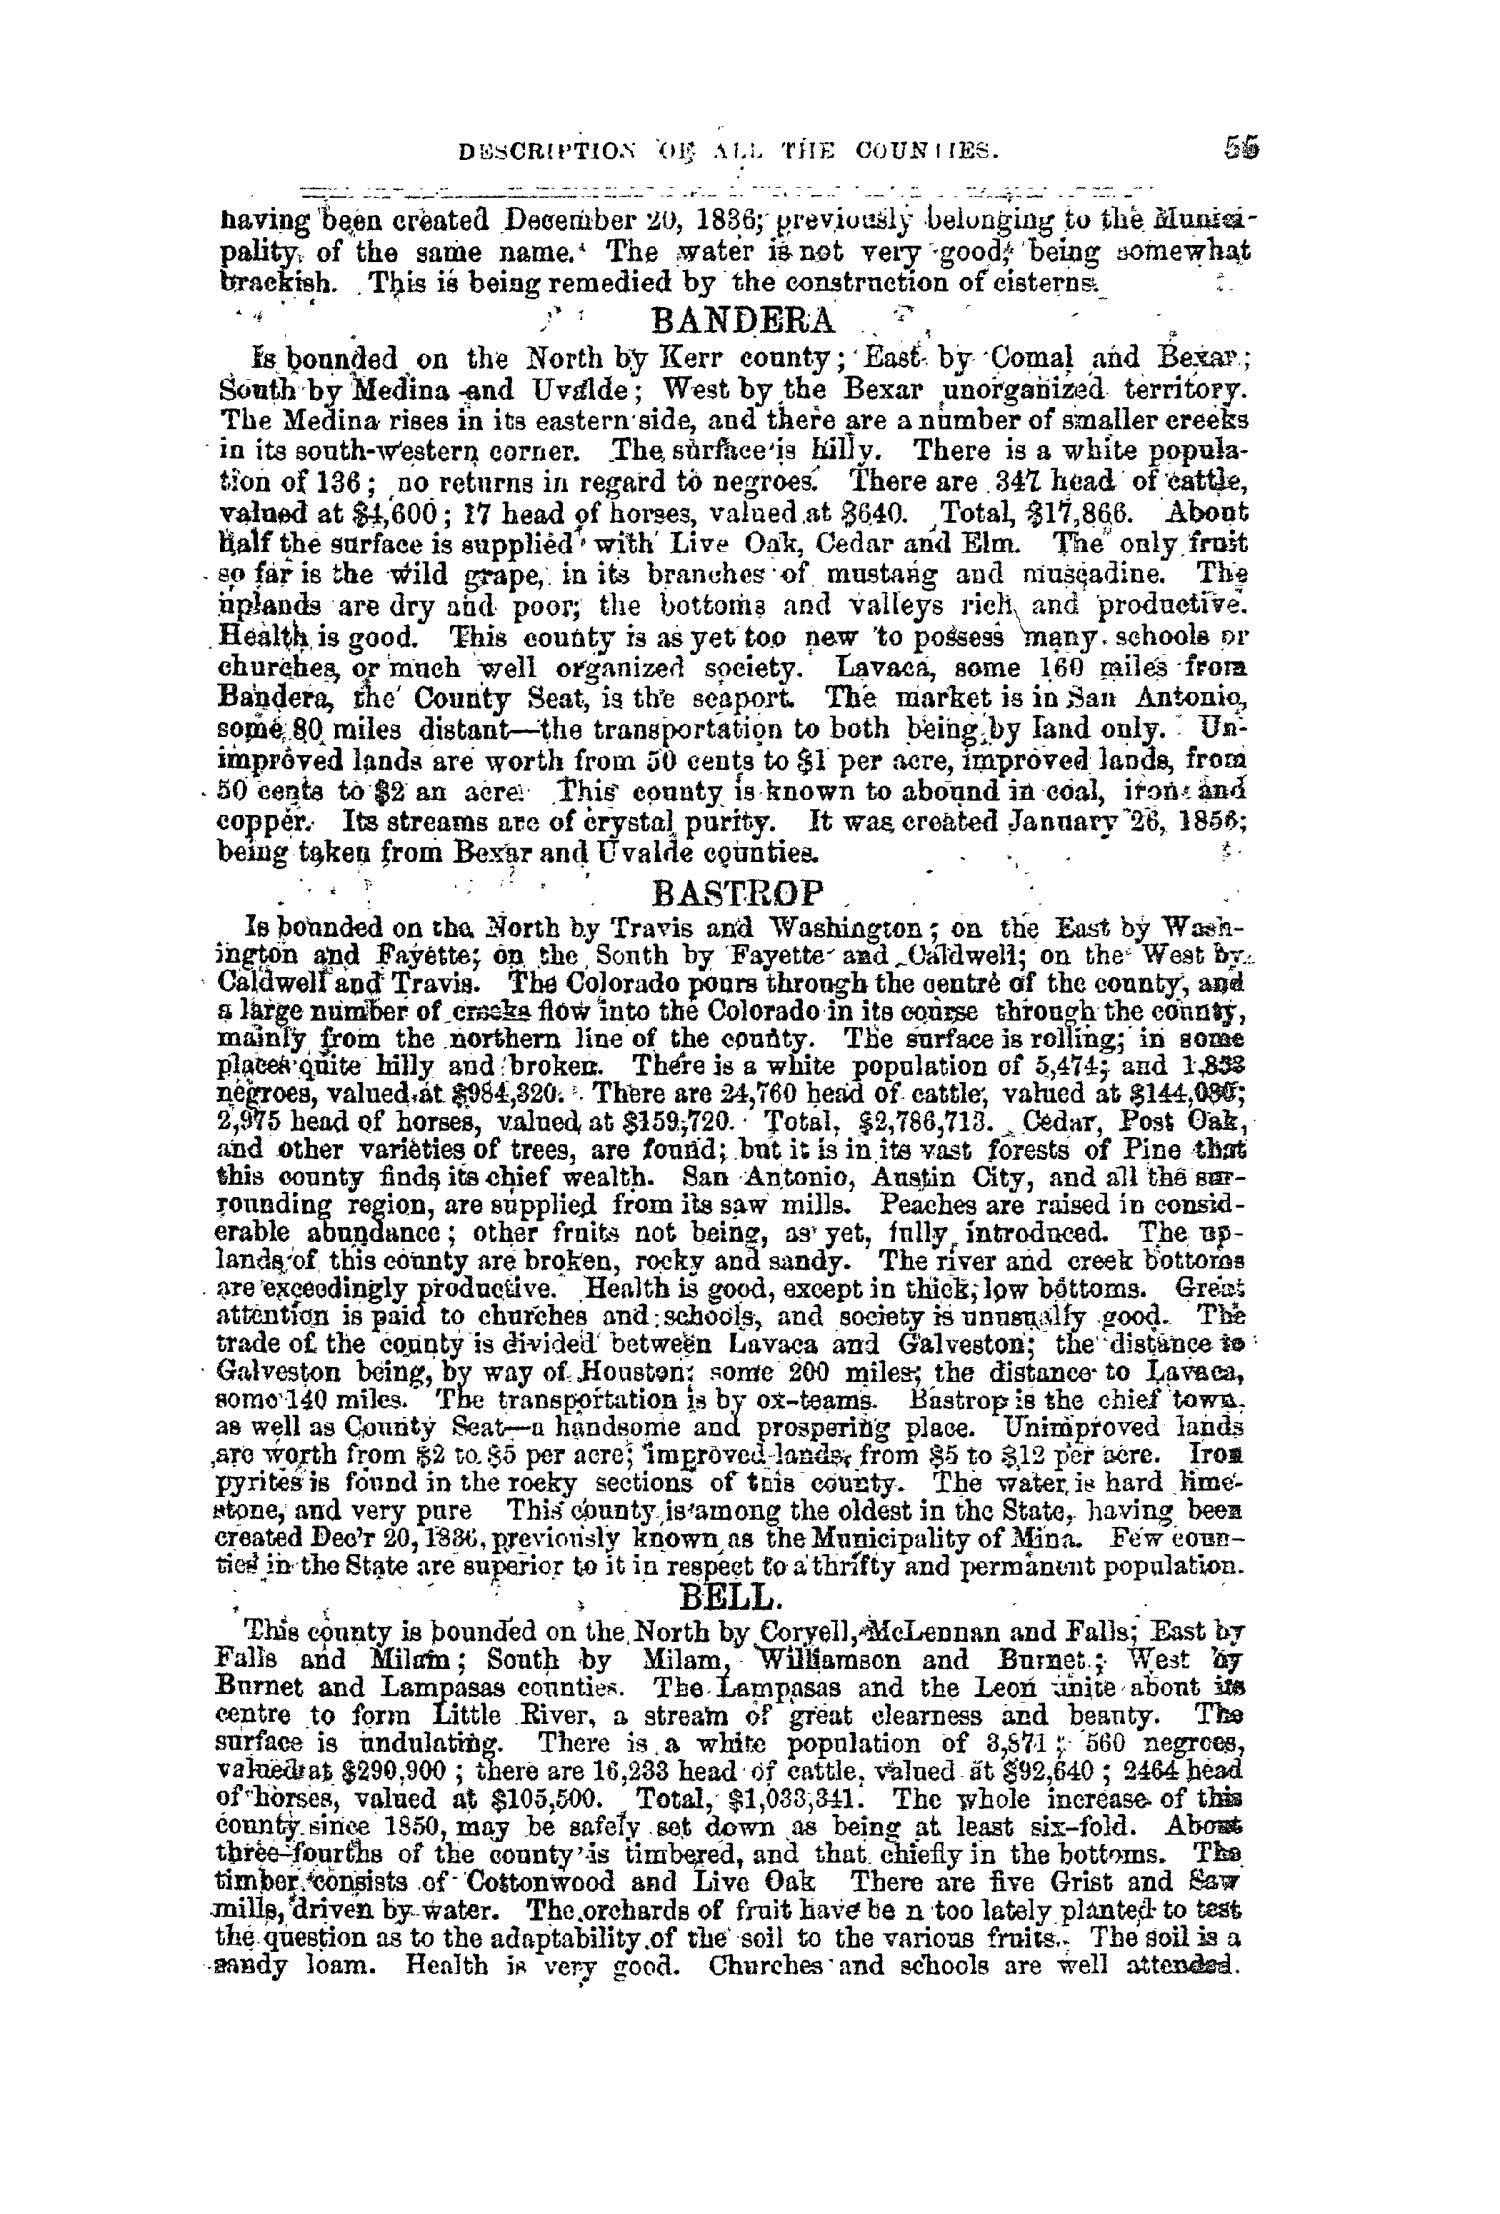 The Texas Almanac for 1858
                                                
                                                    55
                                                